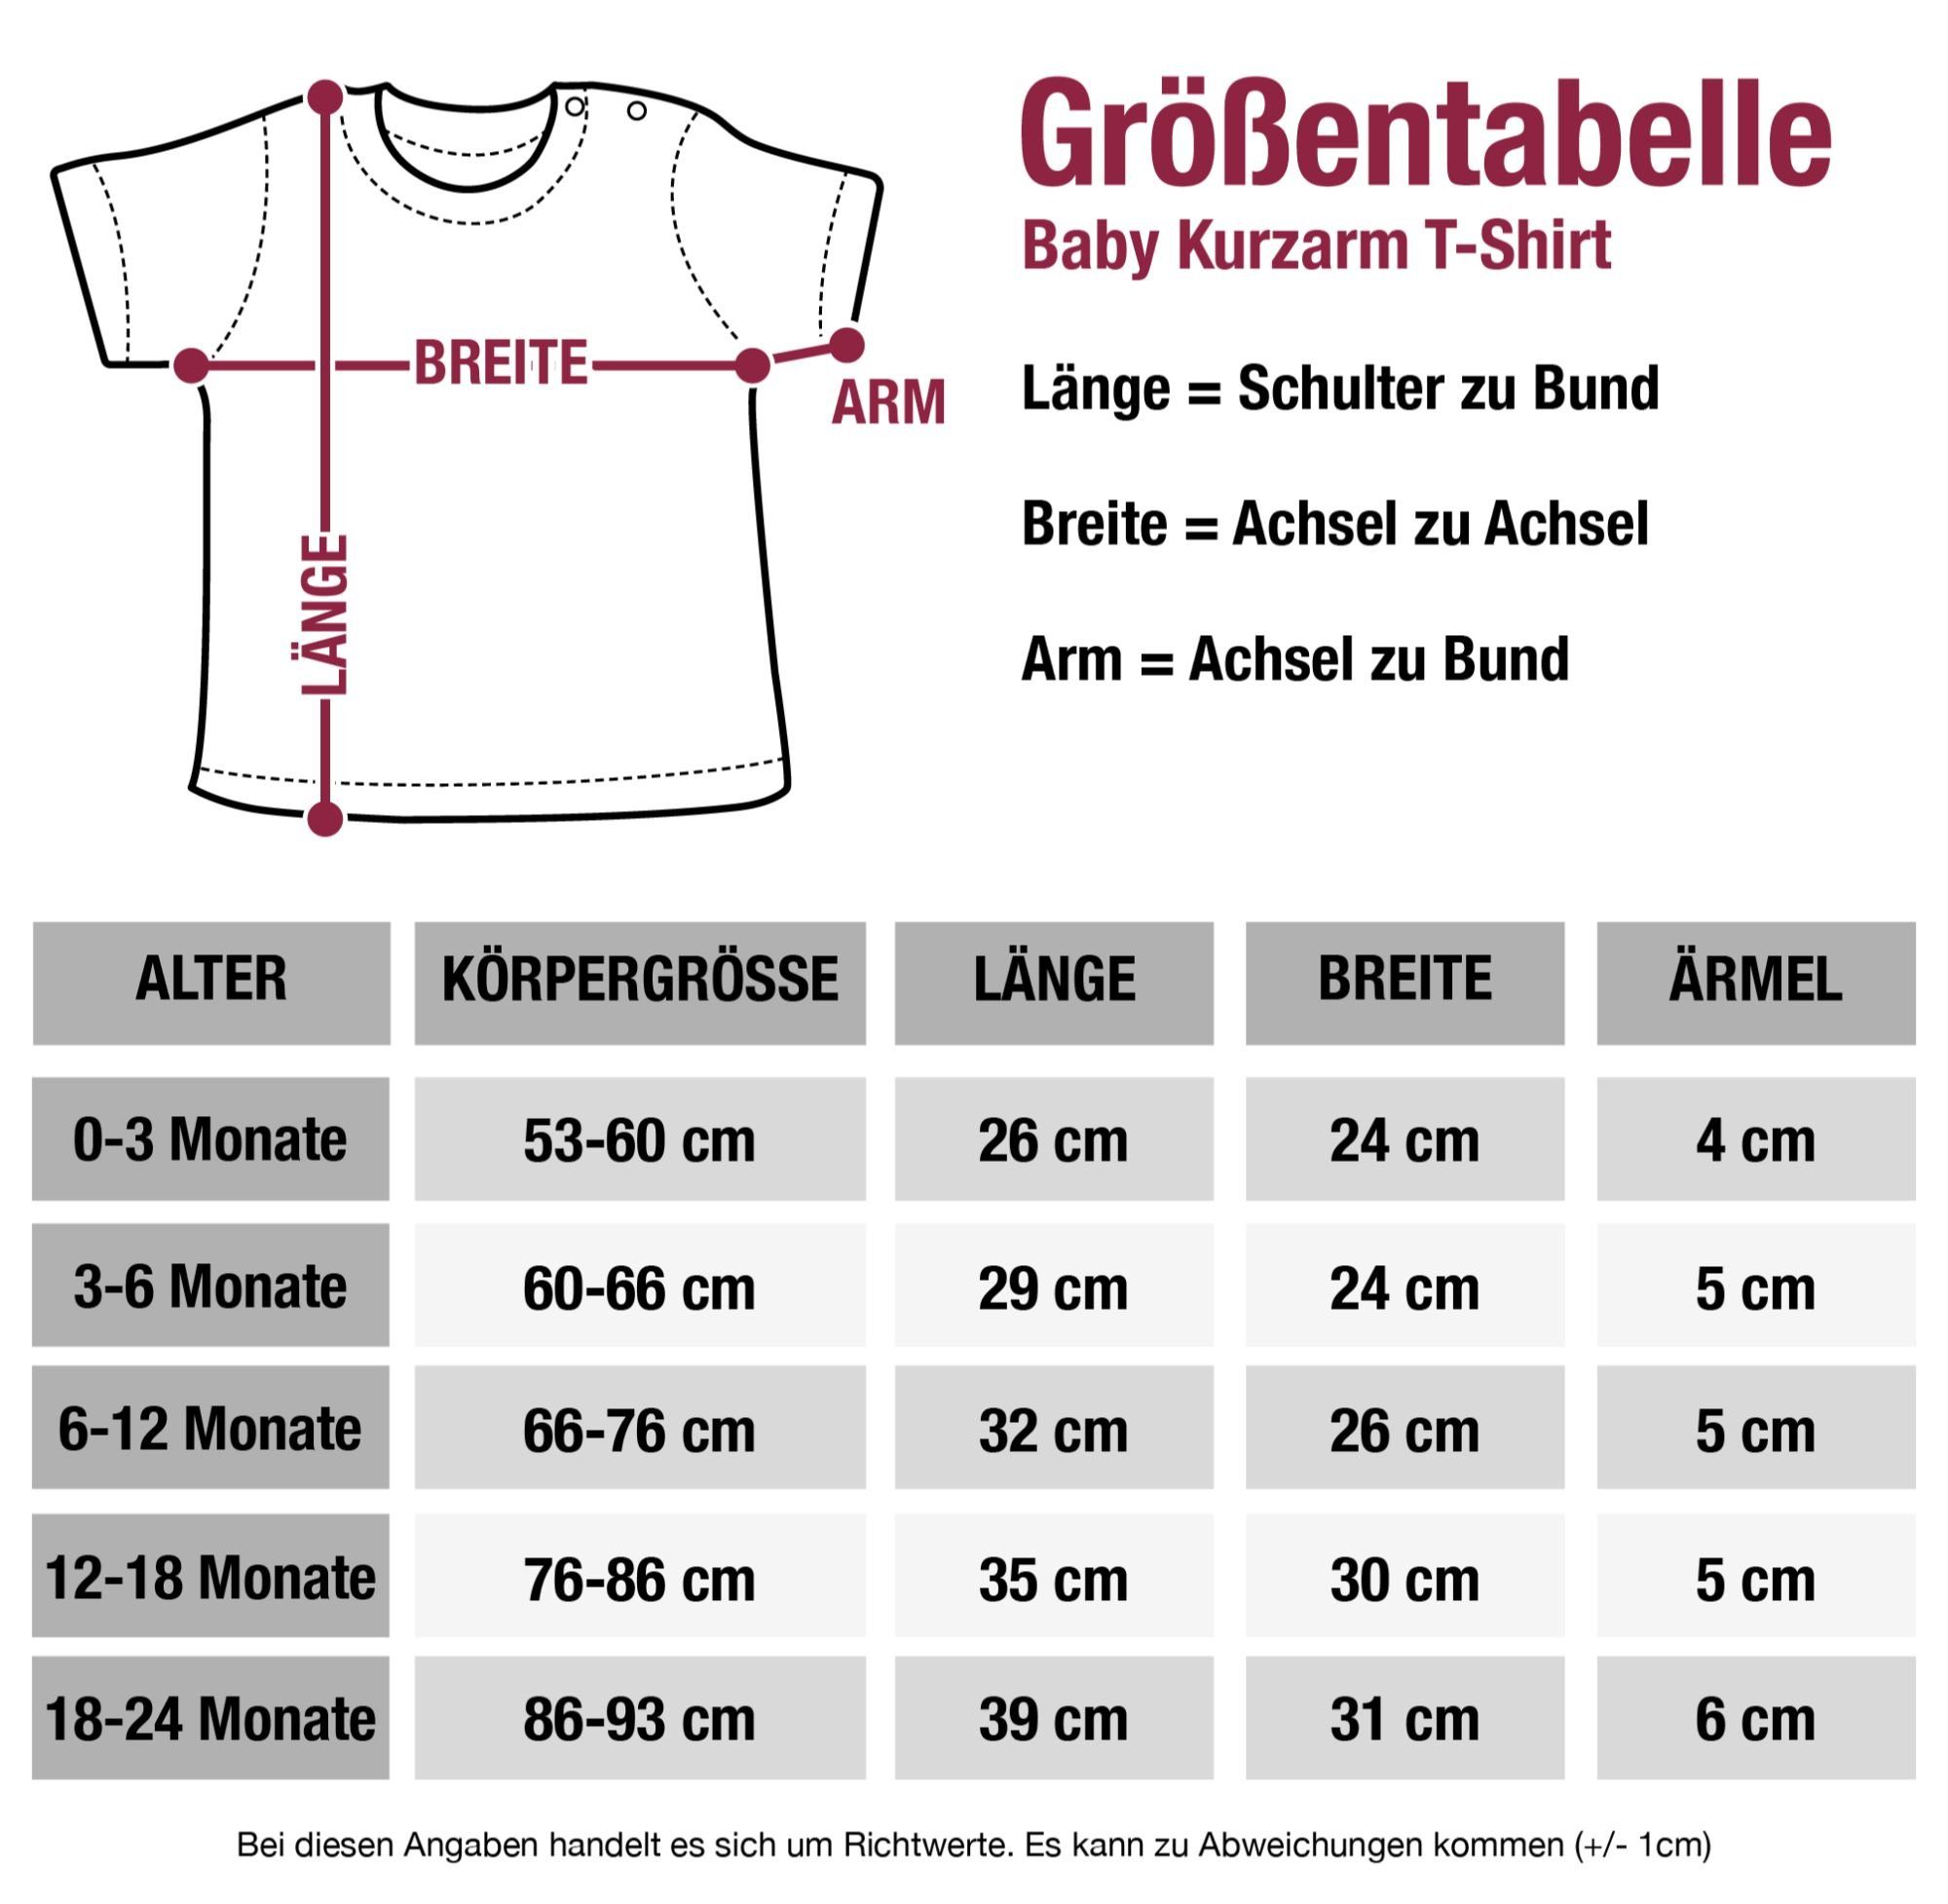 1 Sprüche Shirtracer Baby Dorfkind T-Shirt Weiss Royalblau